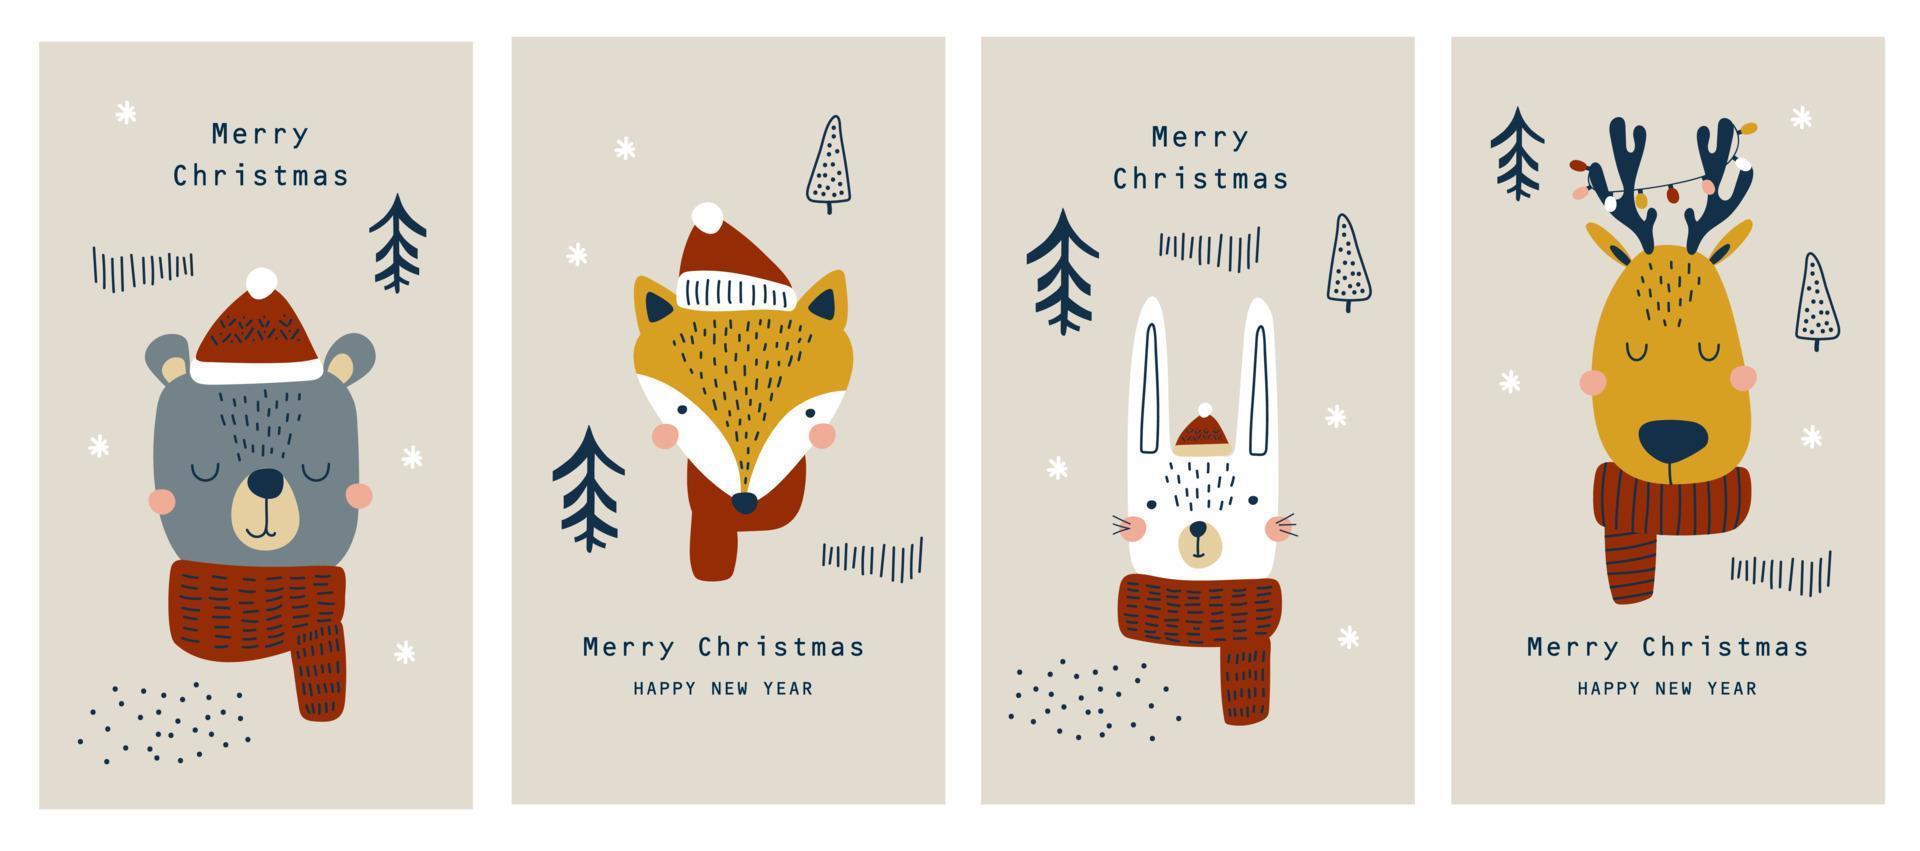 tarjeta de navidad con lindas ilustraciones de animales del bosque.vector vector